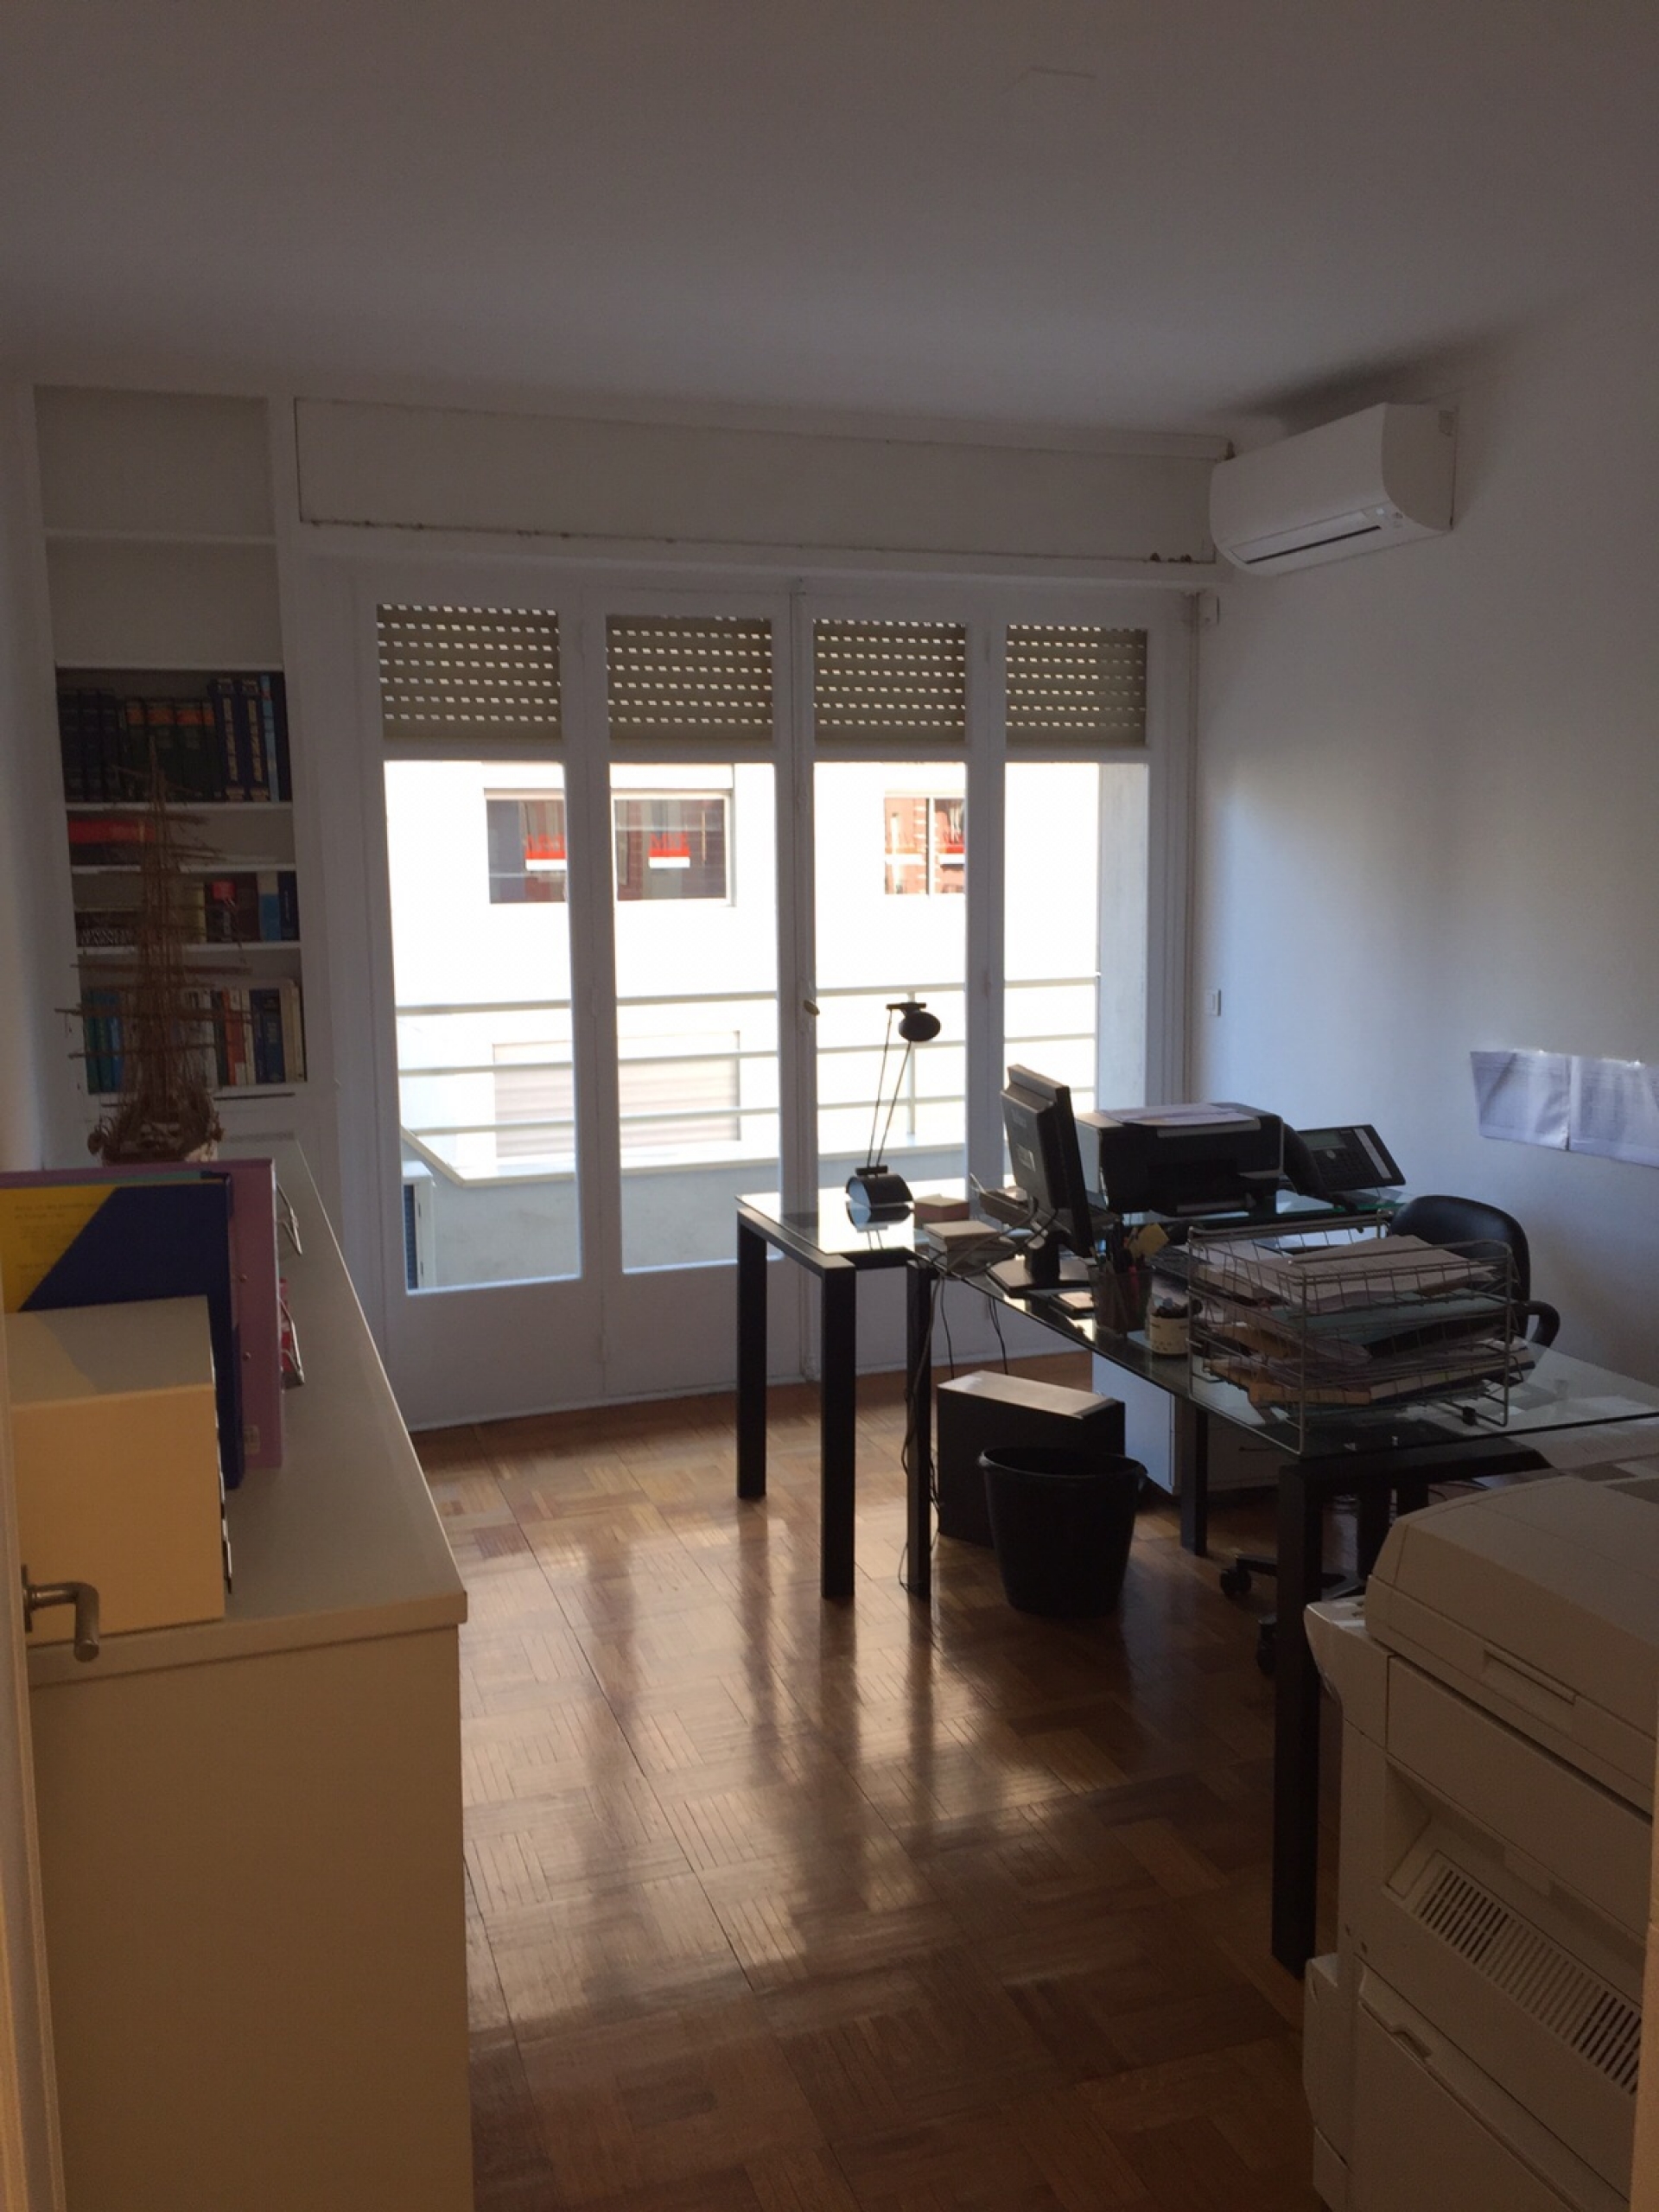 Dotta Appartement de 3 pieces a vendre - MARGARET - La Rousse - Monaco - img8002